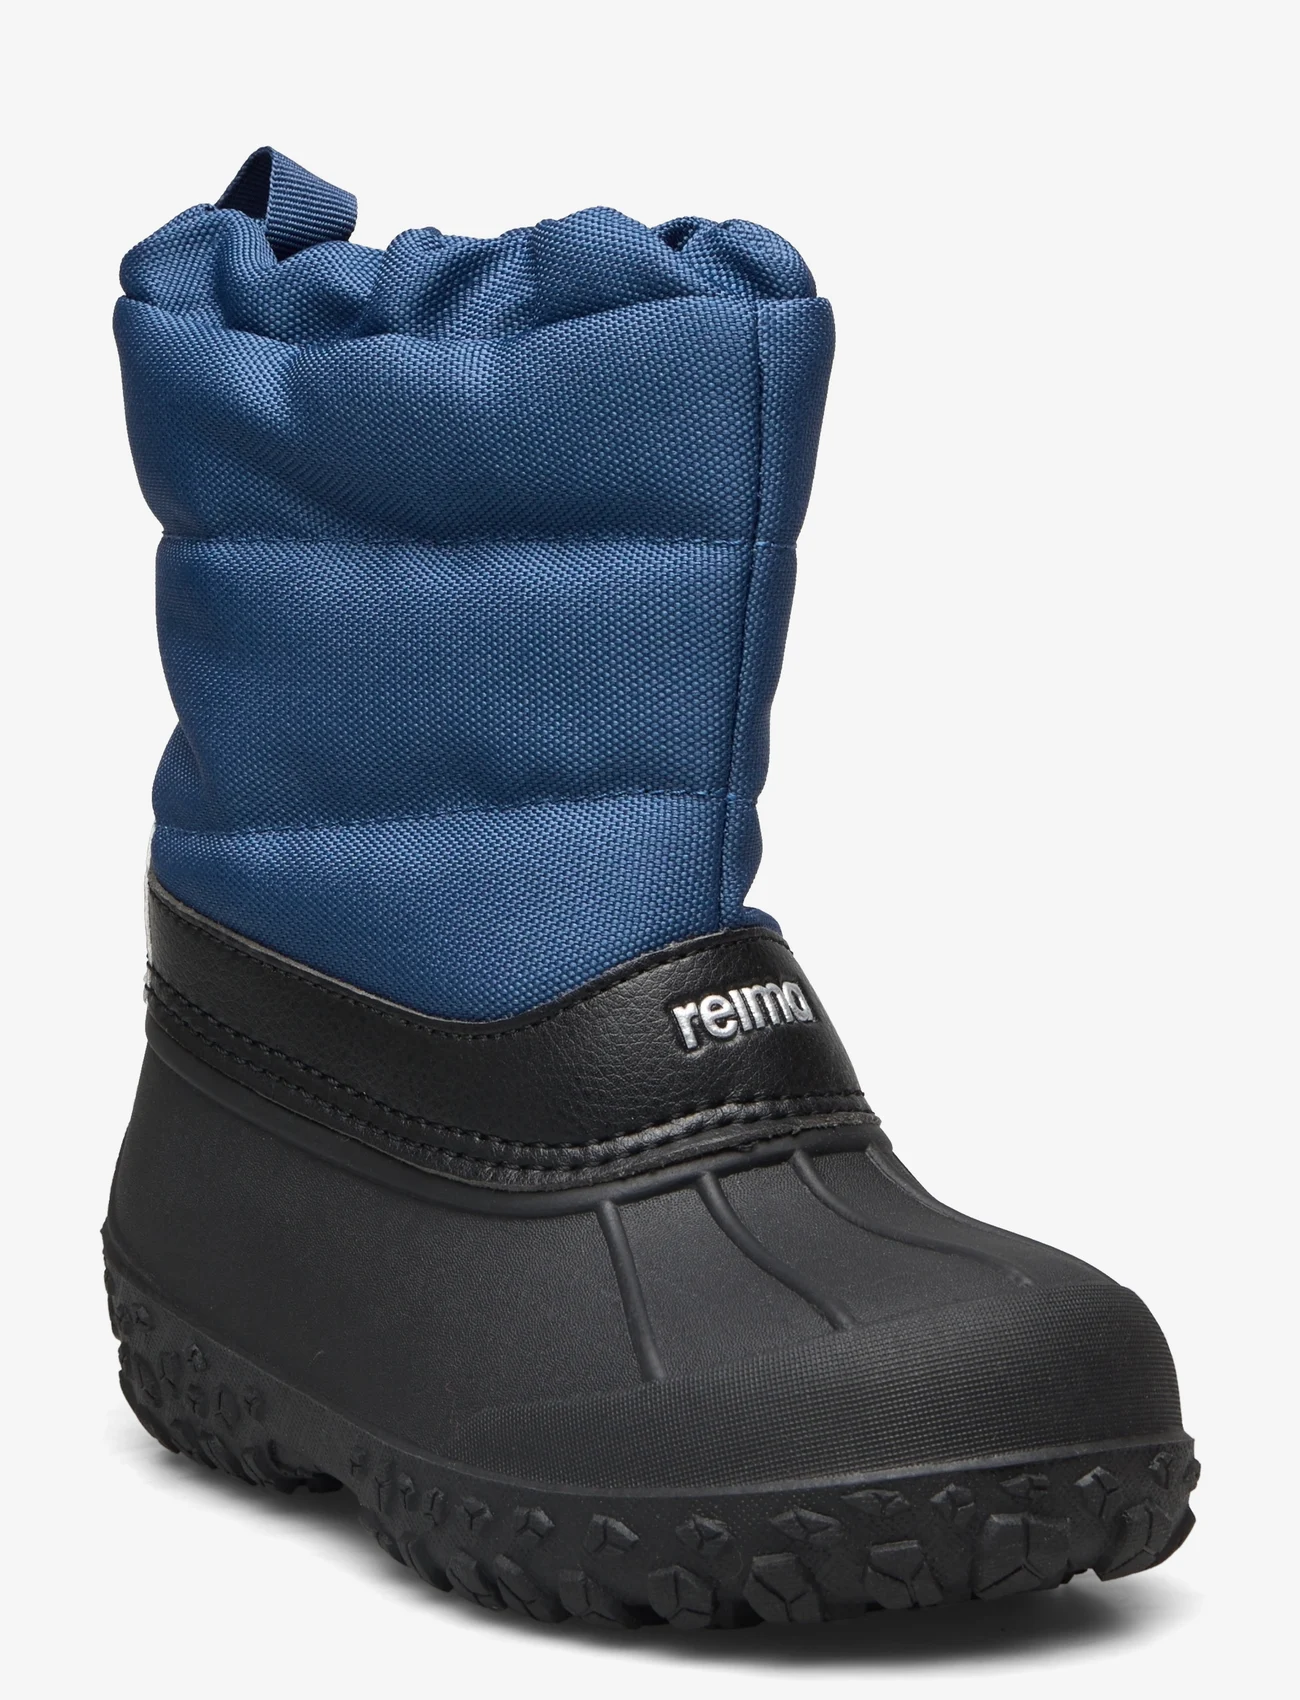 Reima - Winter boots, Loskari - kinder - blue - 0